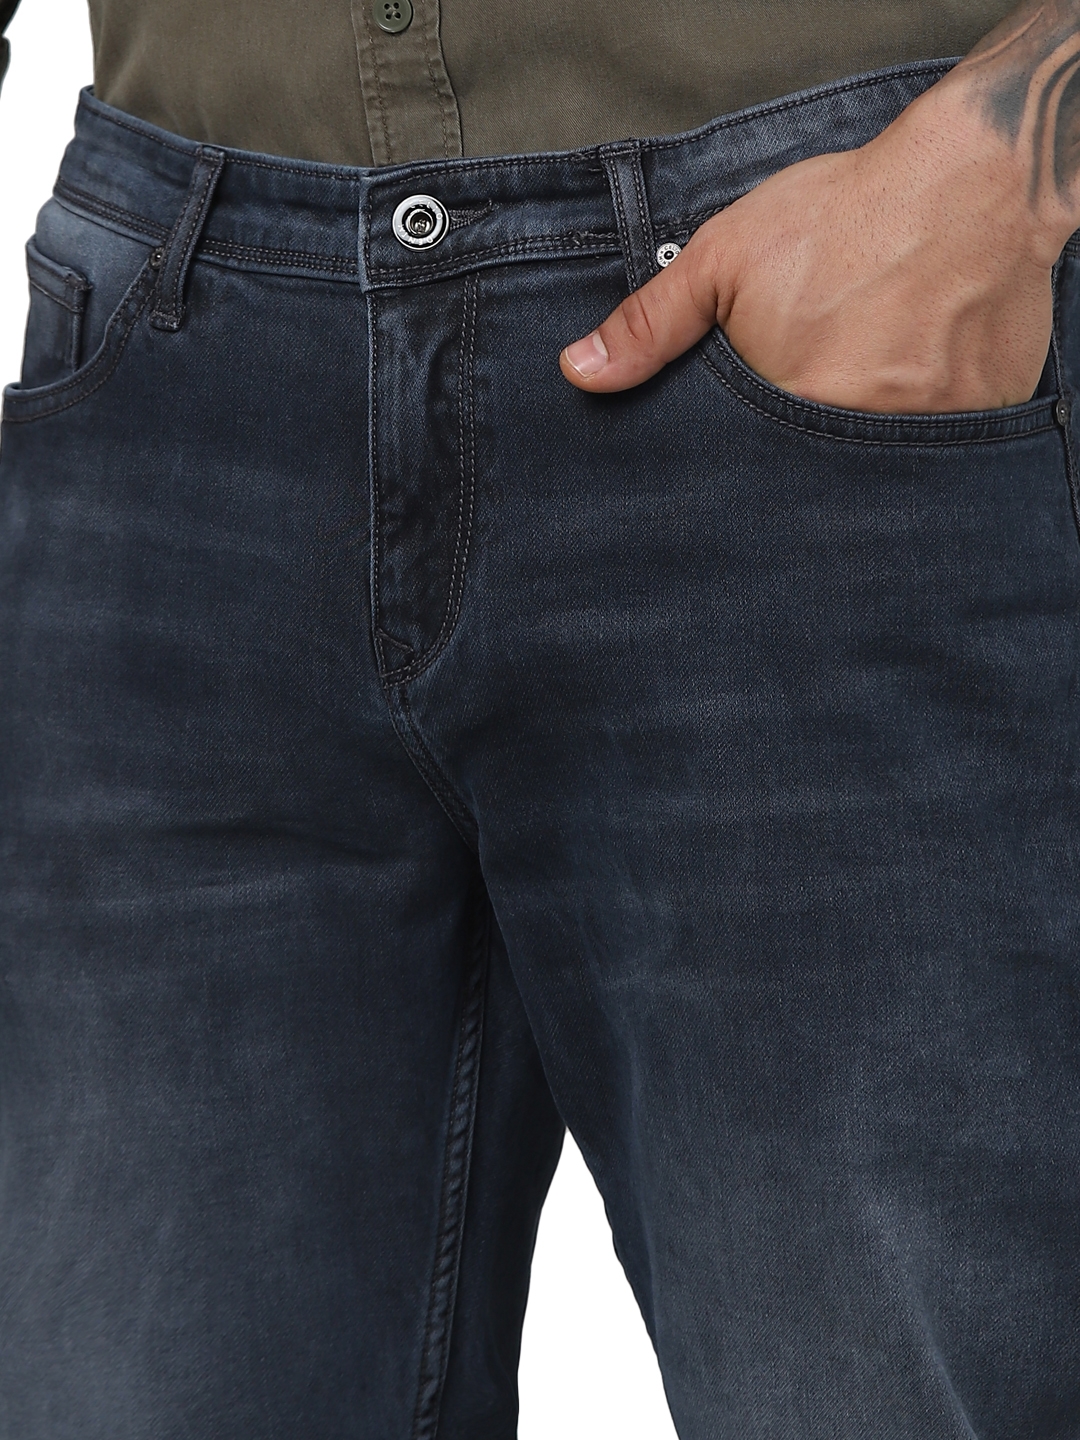 Celio Men Grey Solid Slim Fit Cotton Knit Denim Jeans